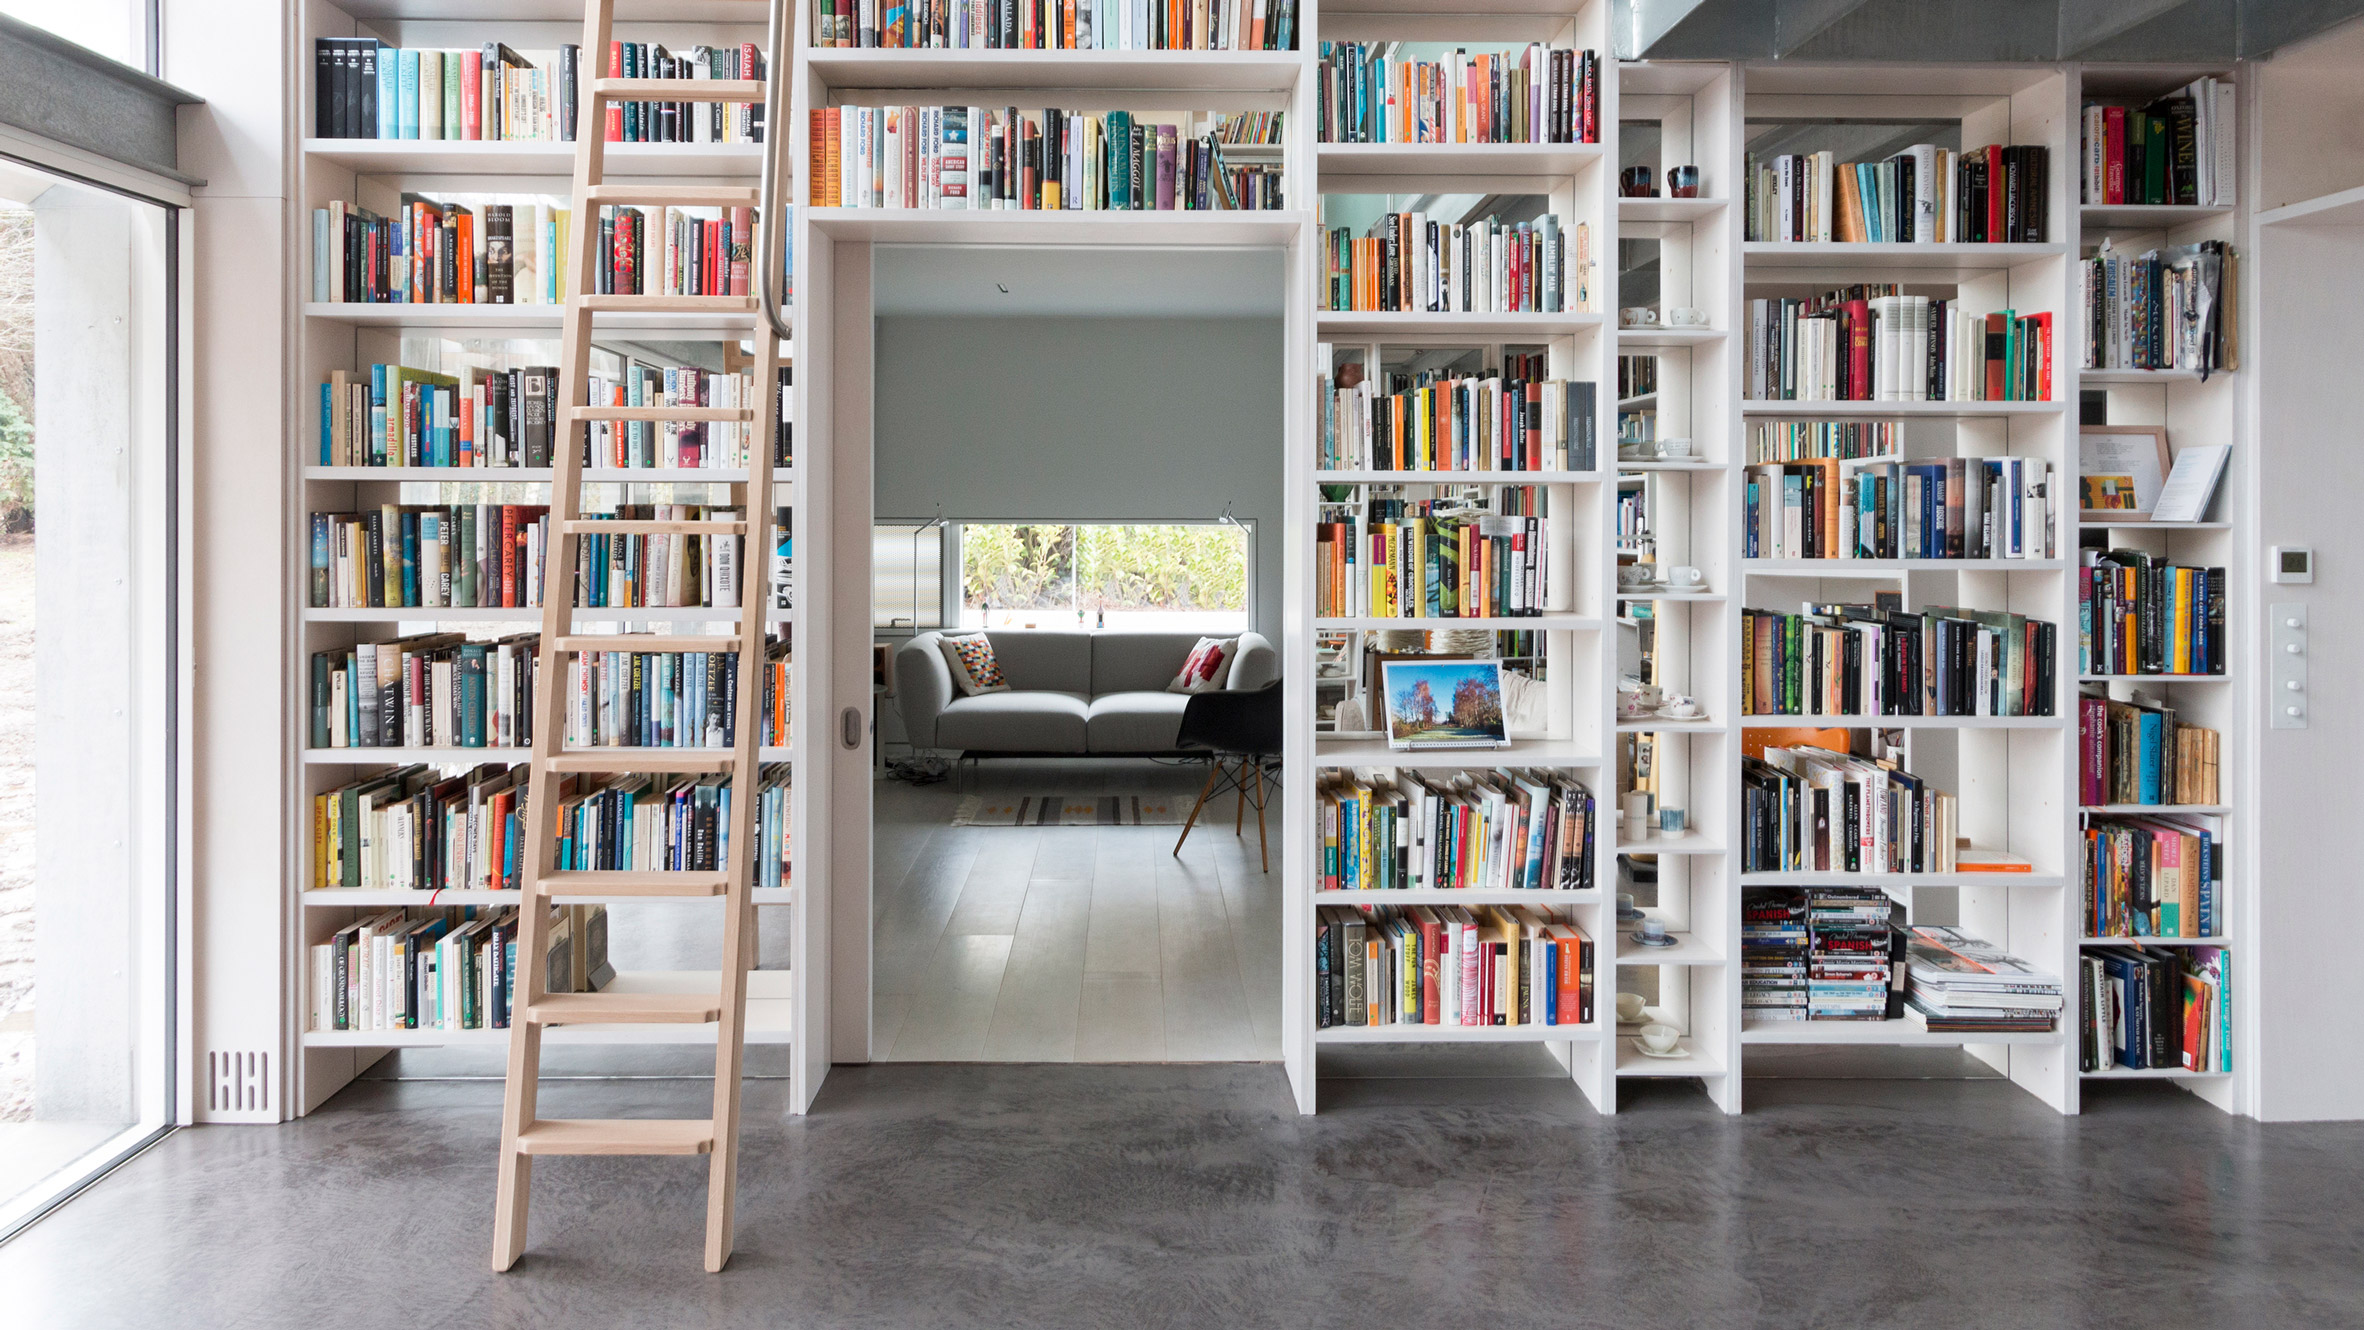 Modern Home Library Design, Lighting Ideas for Bookcases and Shelves   Modern home library, Home library design, Modern home library design